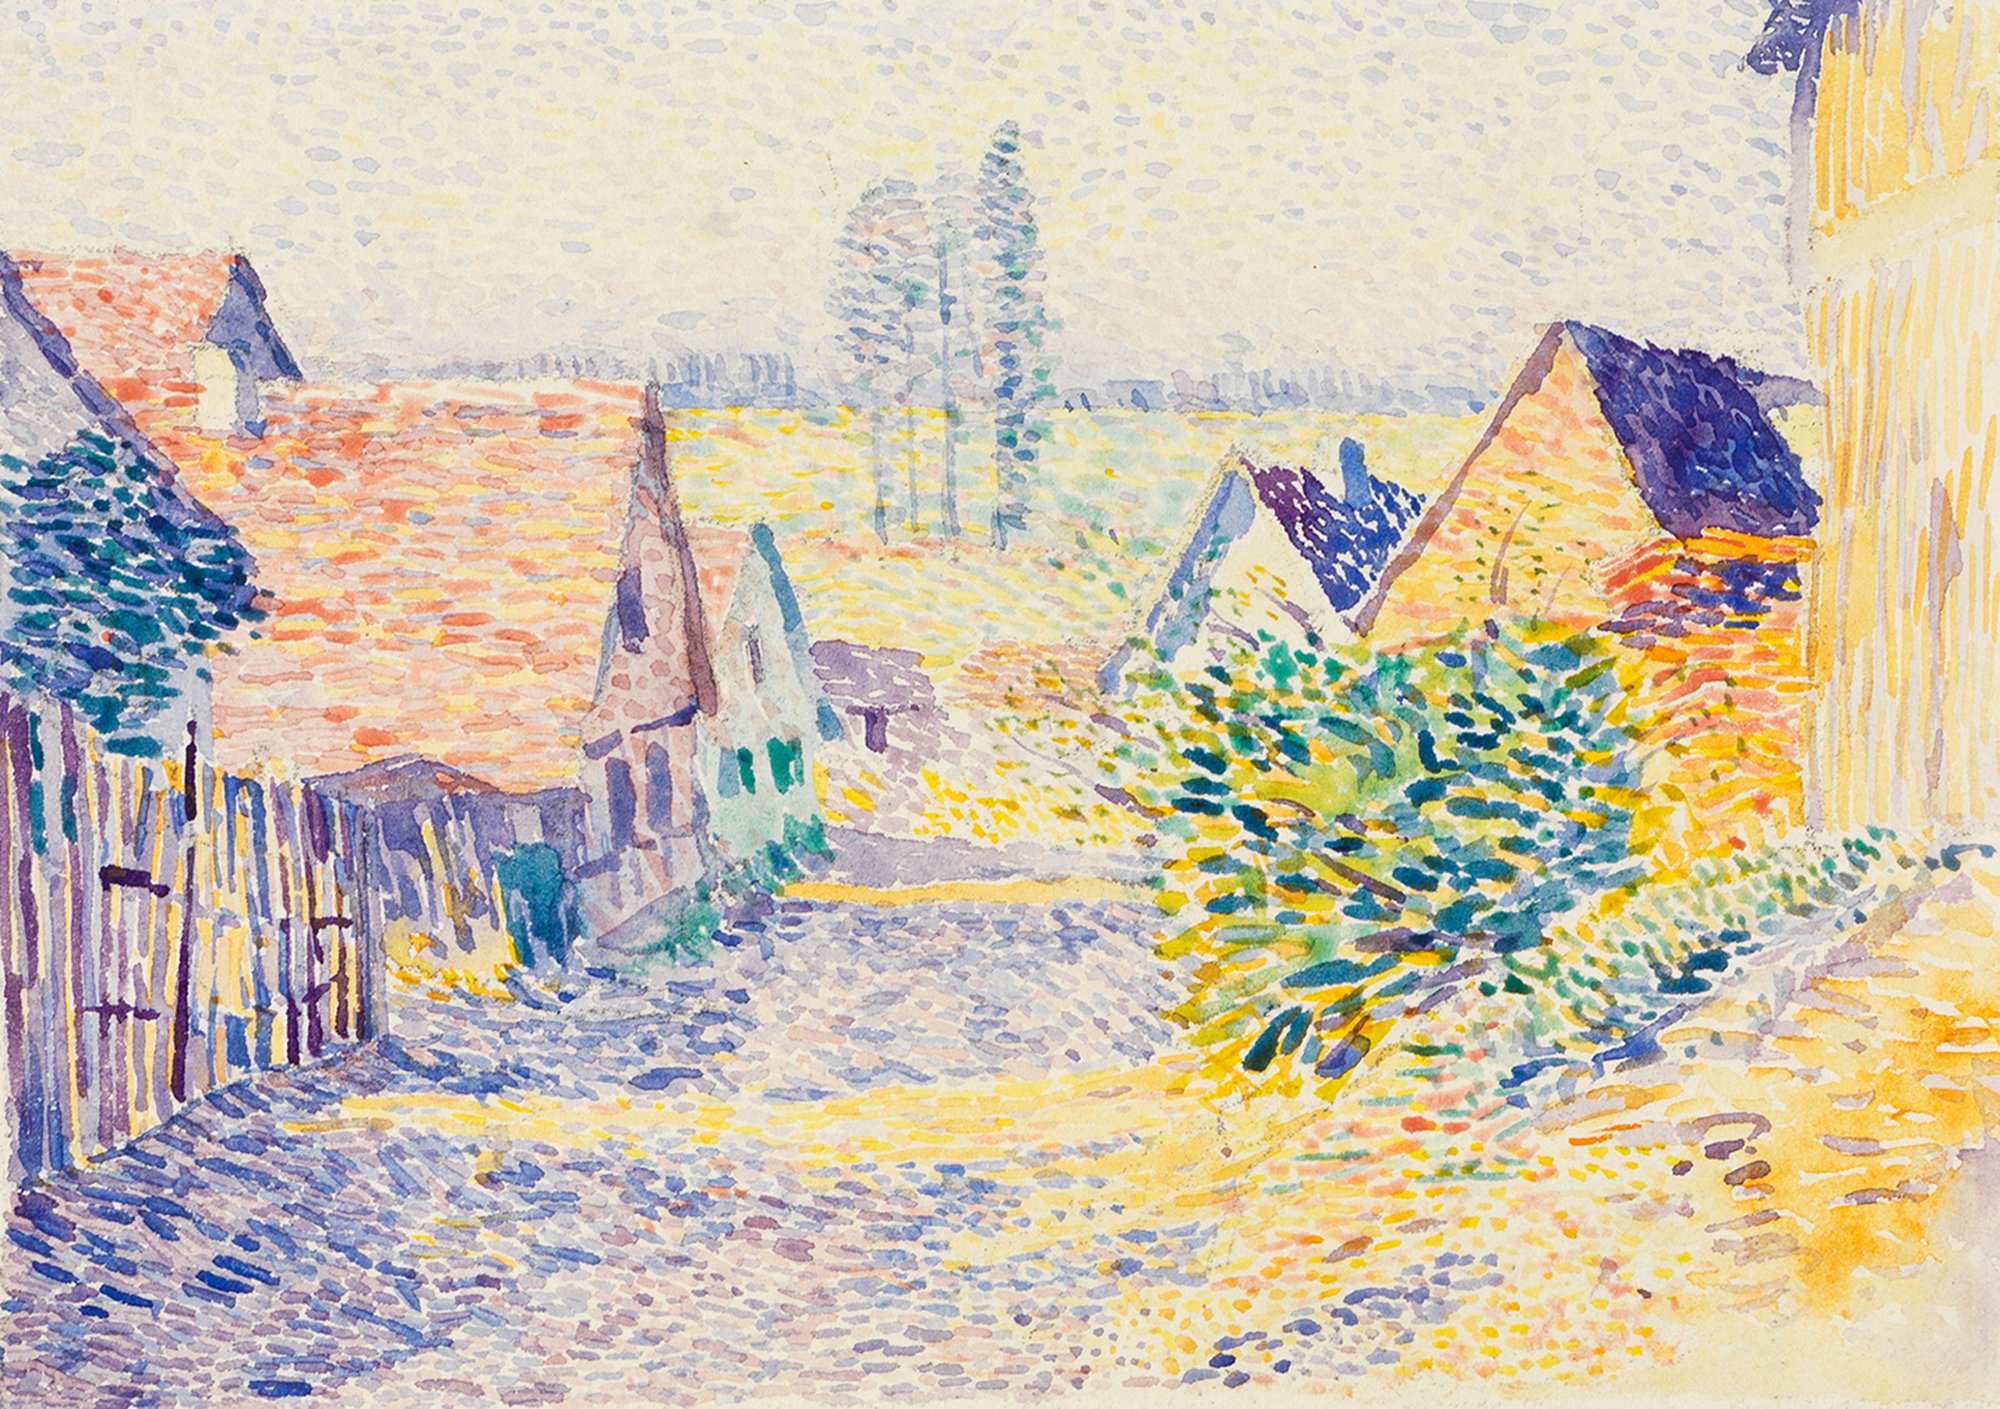 Abbildung des Werks "Dorfstraße in Leopoldshafen II" des Künstlers Alexander Kanoldt, das in der Ausstellung "Hierzulande". Die Abbildung ziegt eine Dorfszene mit Häusern und Straße.